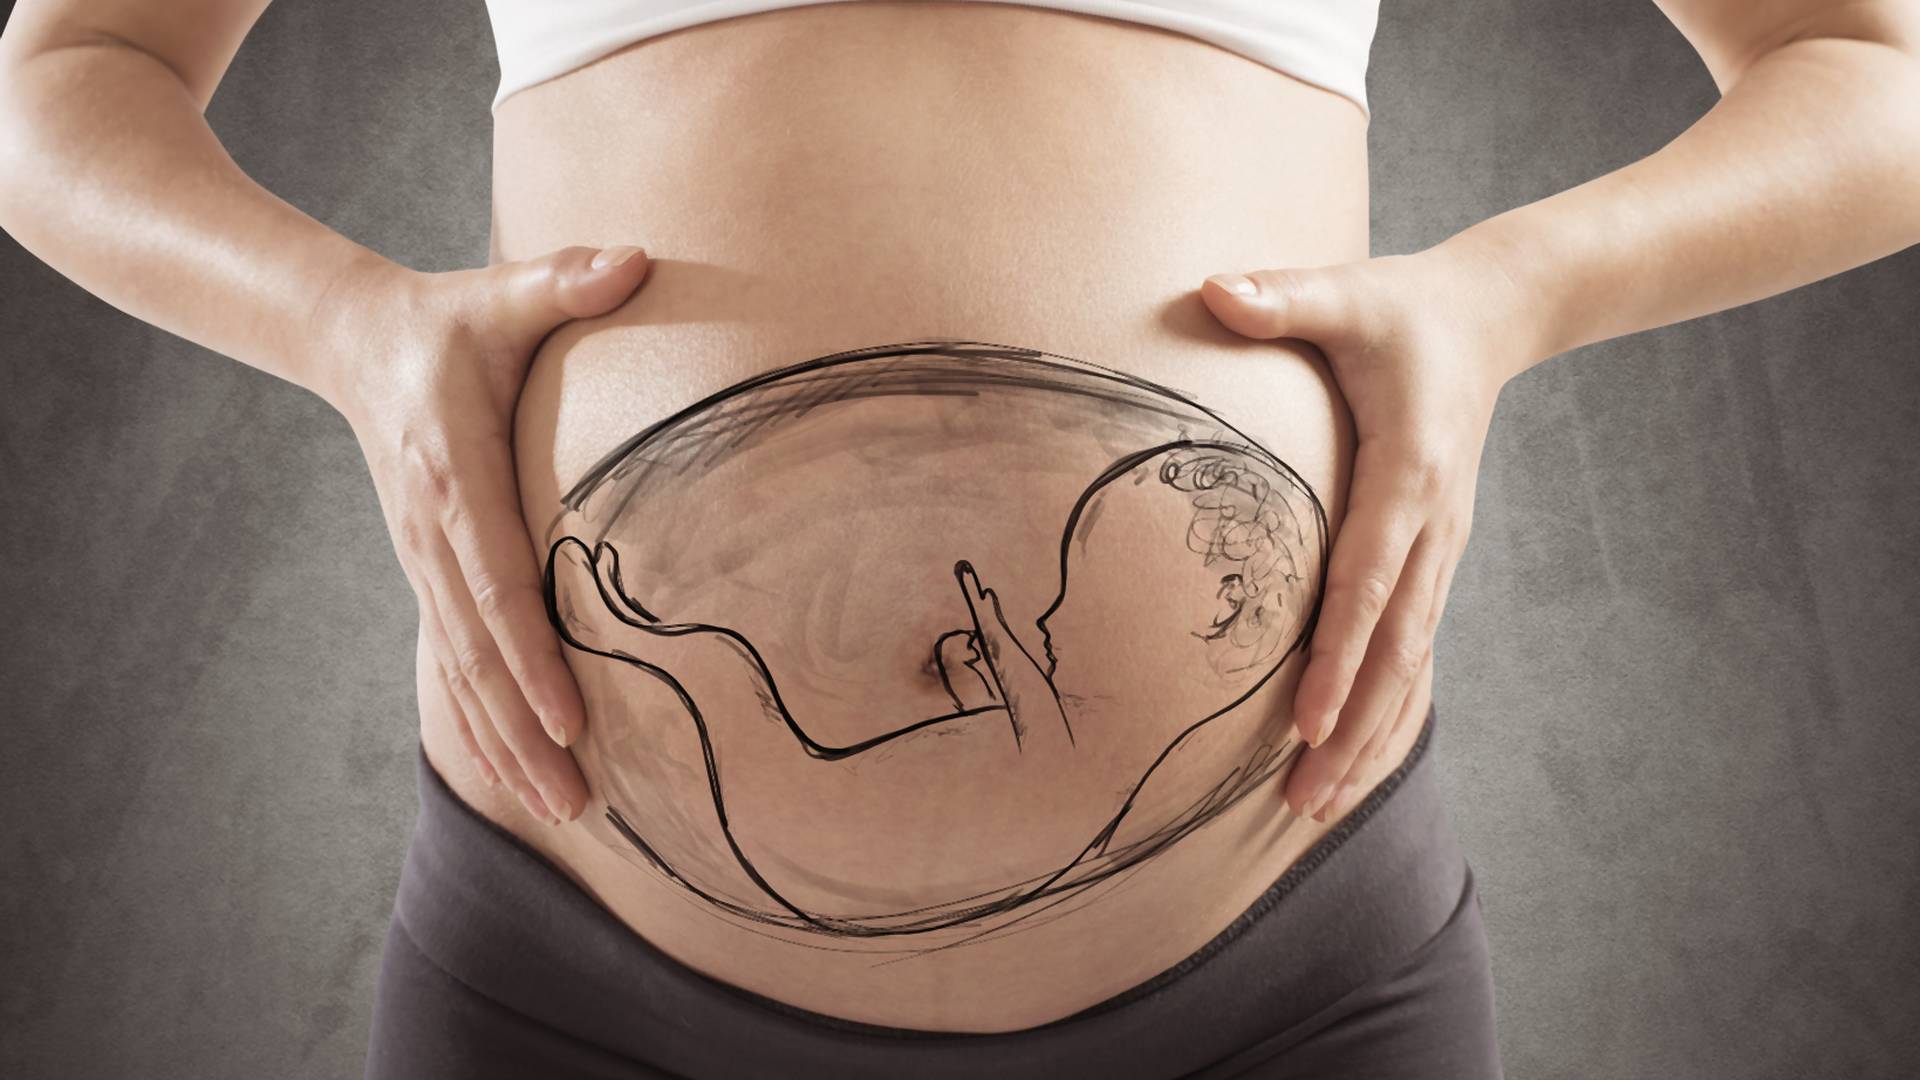 4 tys. zł dla matek, które donoszą ciężko uszkodzony płód. Rządowy projekt ustawy "Za życiem"